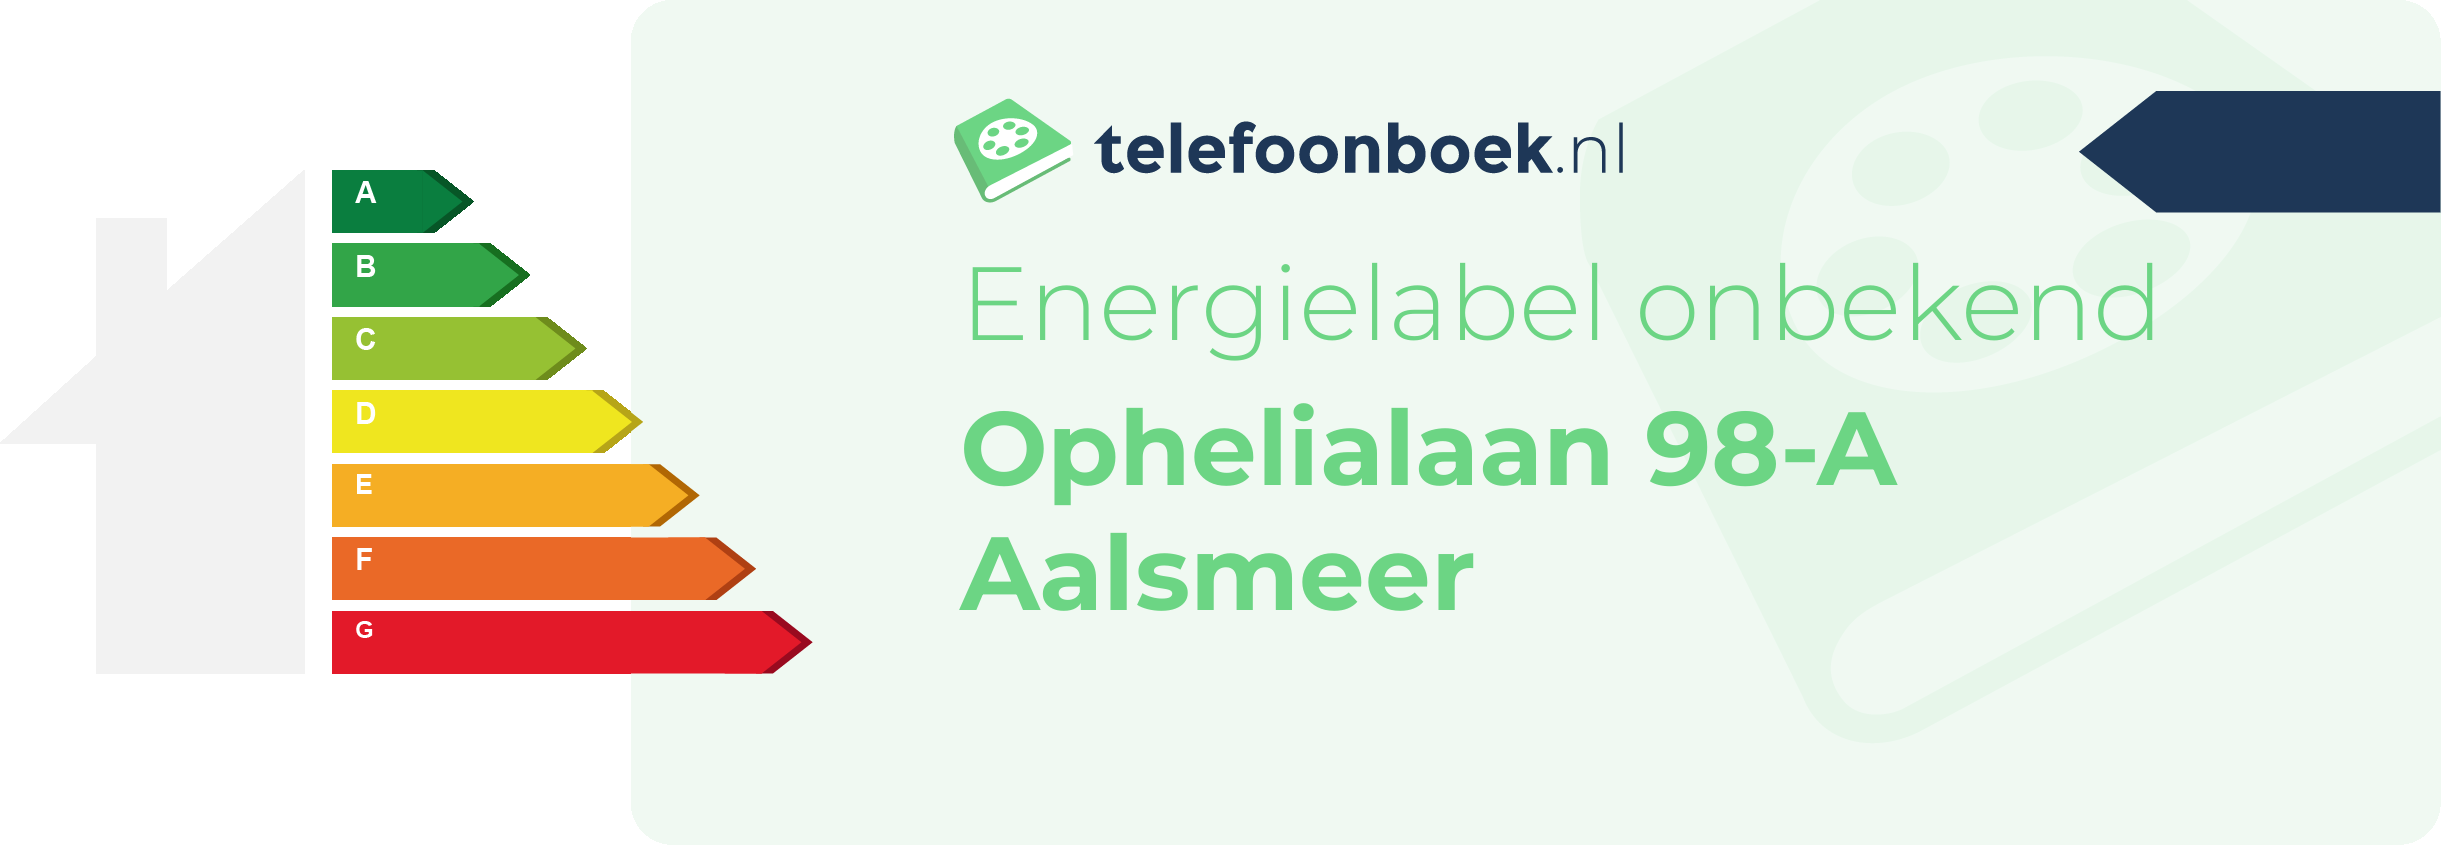 Energielabel Ophelialaan 98-A Aalsmeer